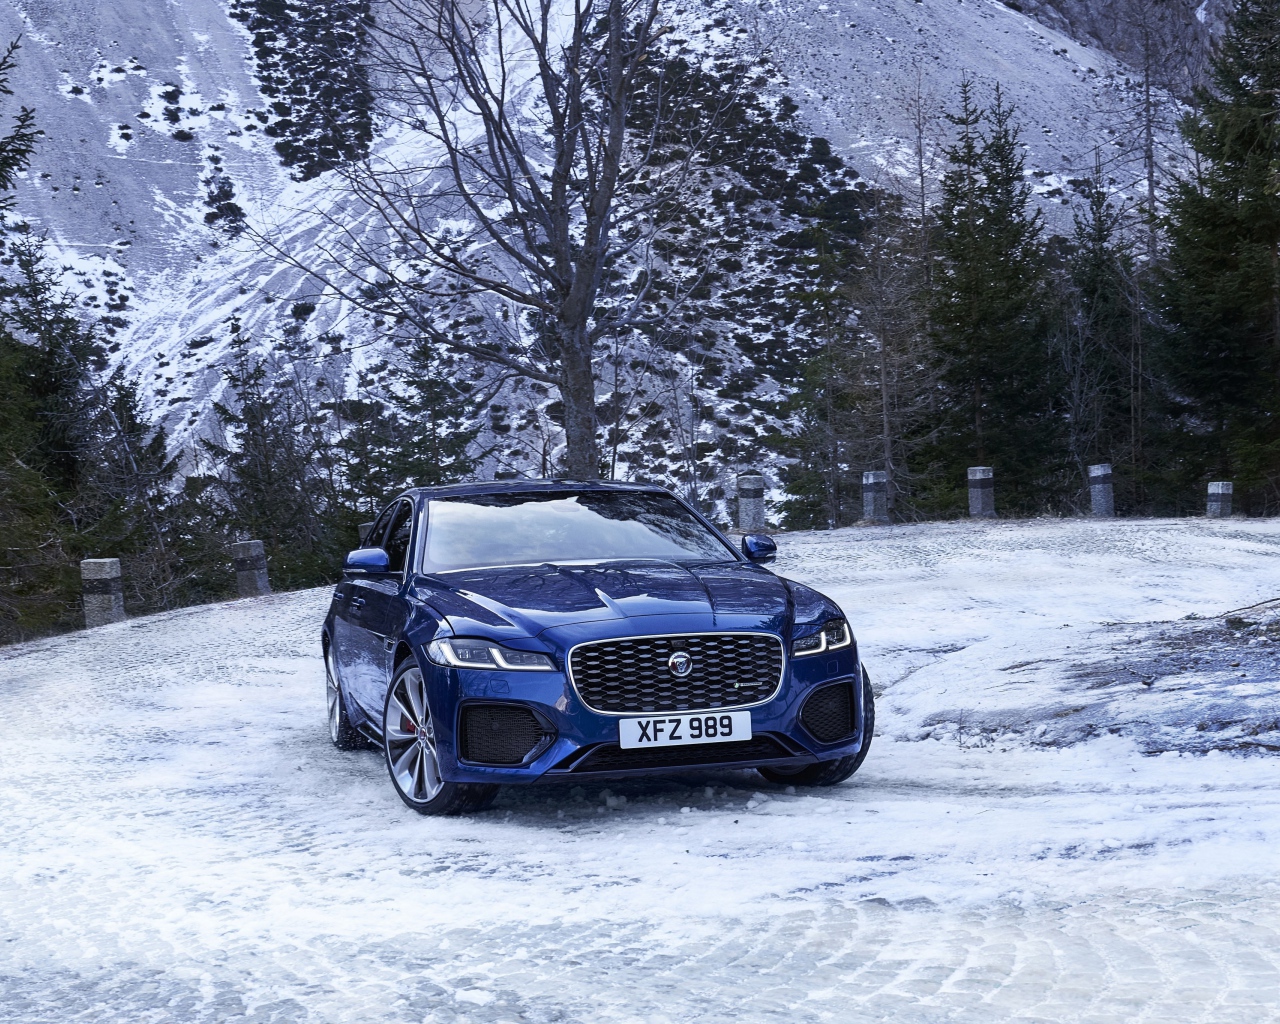 Синий автомобиль Jaguar XF зимой на фоне горы 